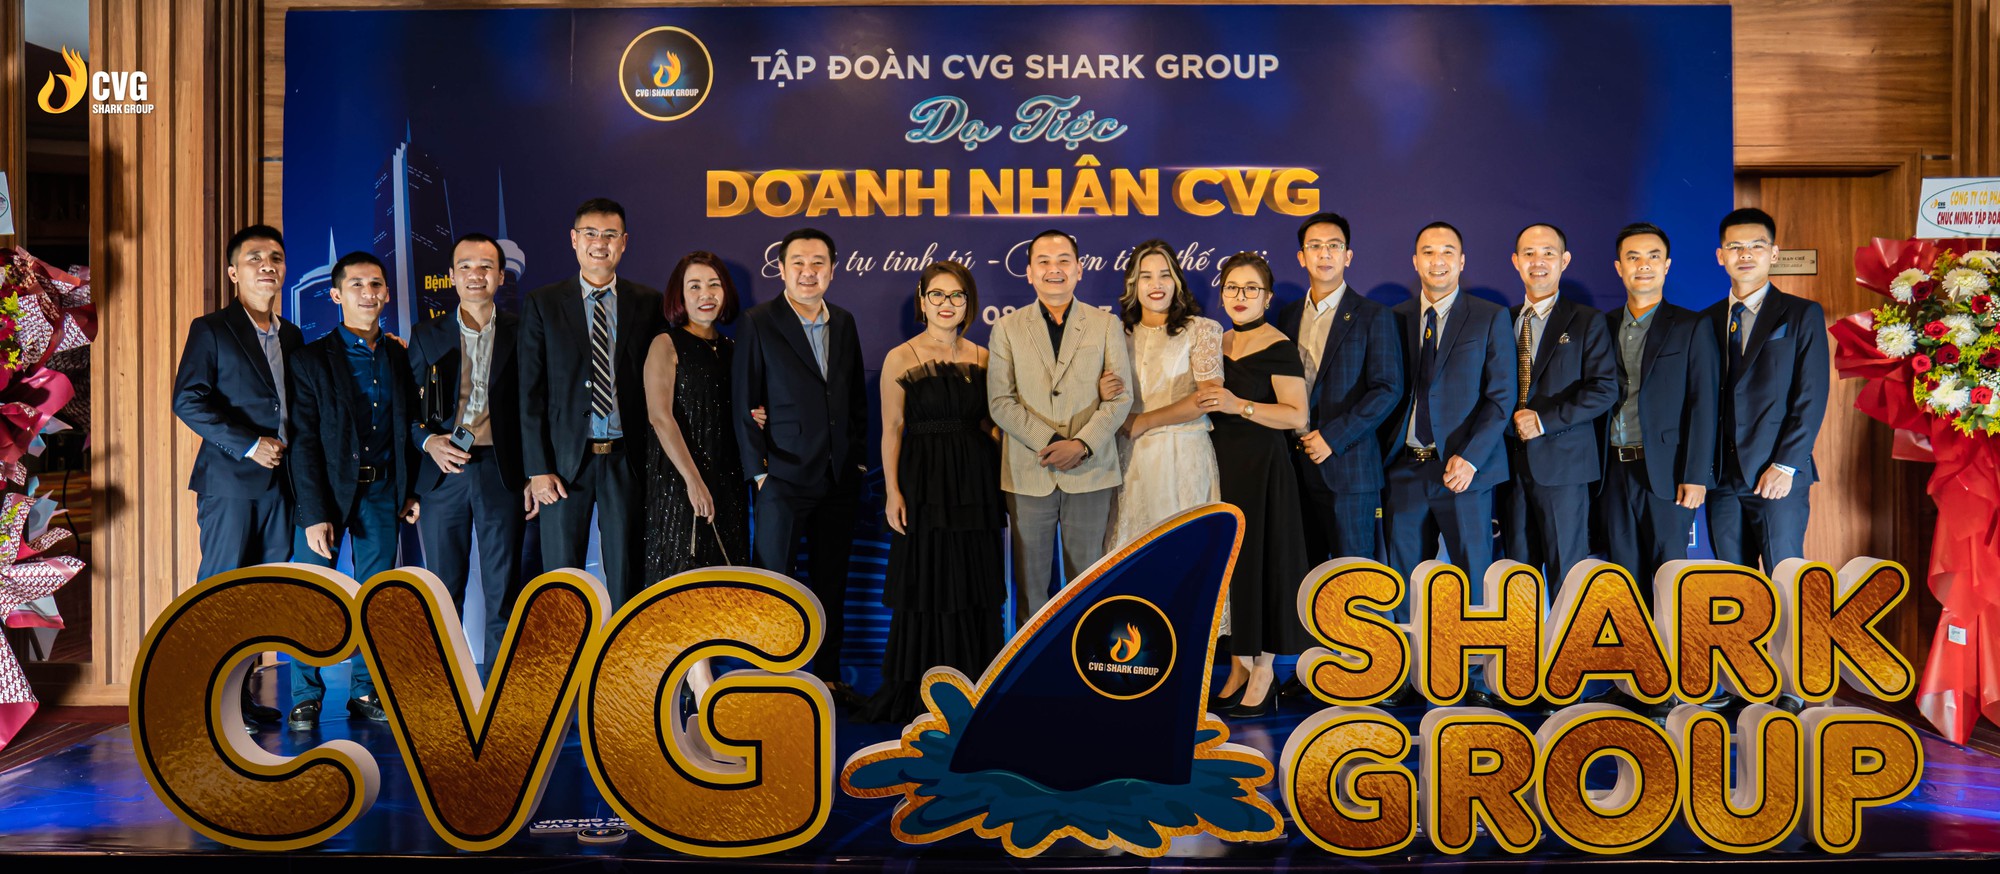 CVG Shark Group lan tỏa nhiều chiến lược kinh doanh linh hoạt - Ảnh 3.